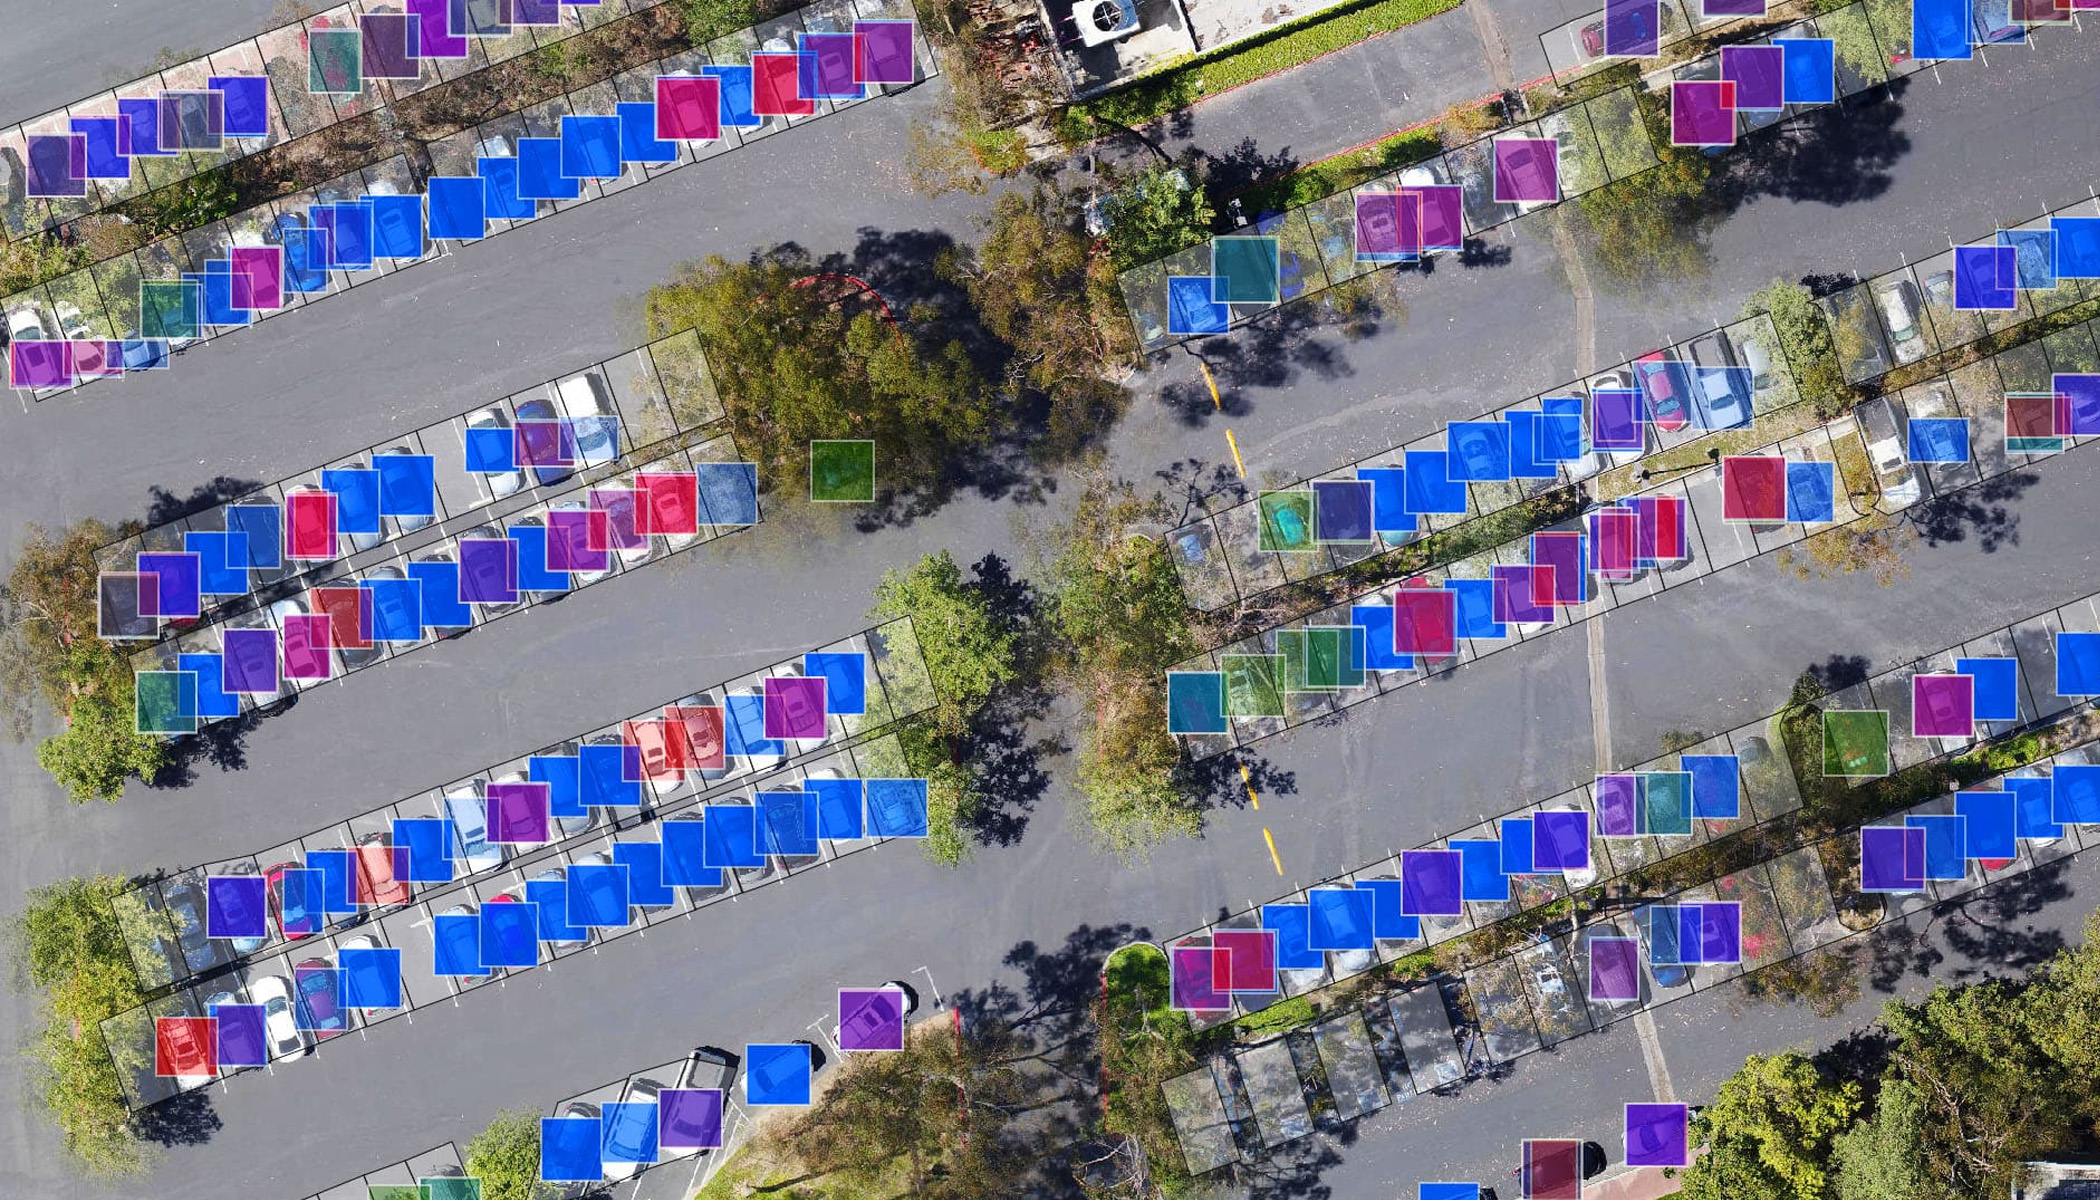 Uma vista aérea de um estacionamento com carros cobertos com quadrados azuis, roxos, verdes e rosa